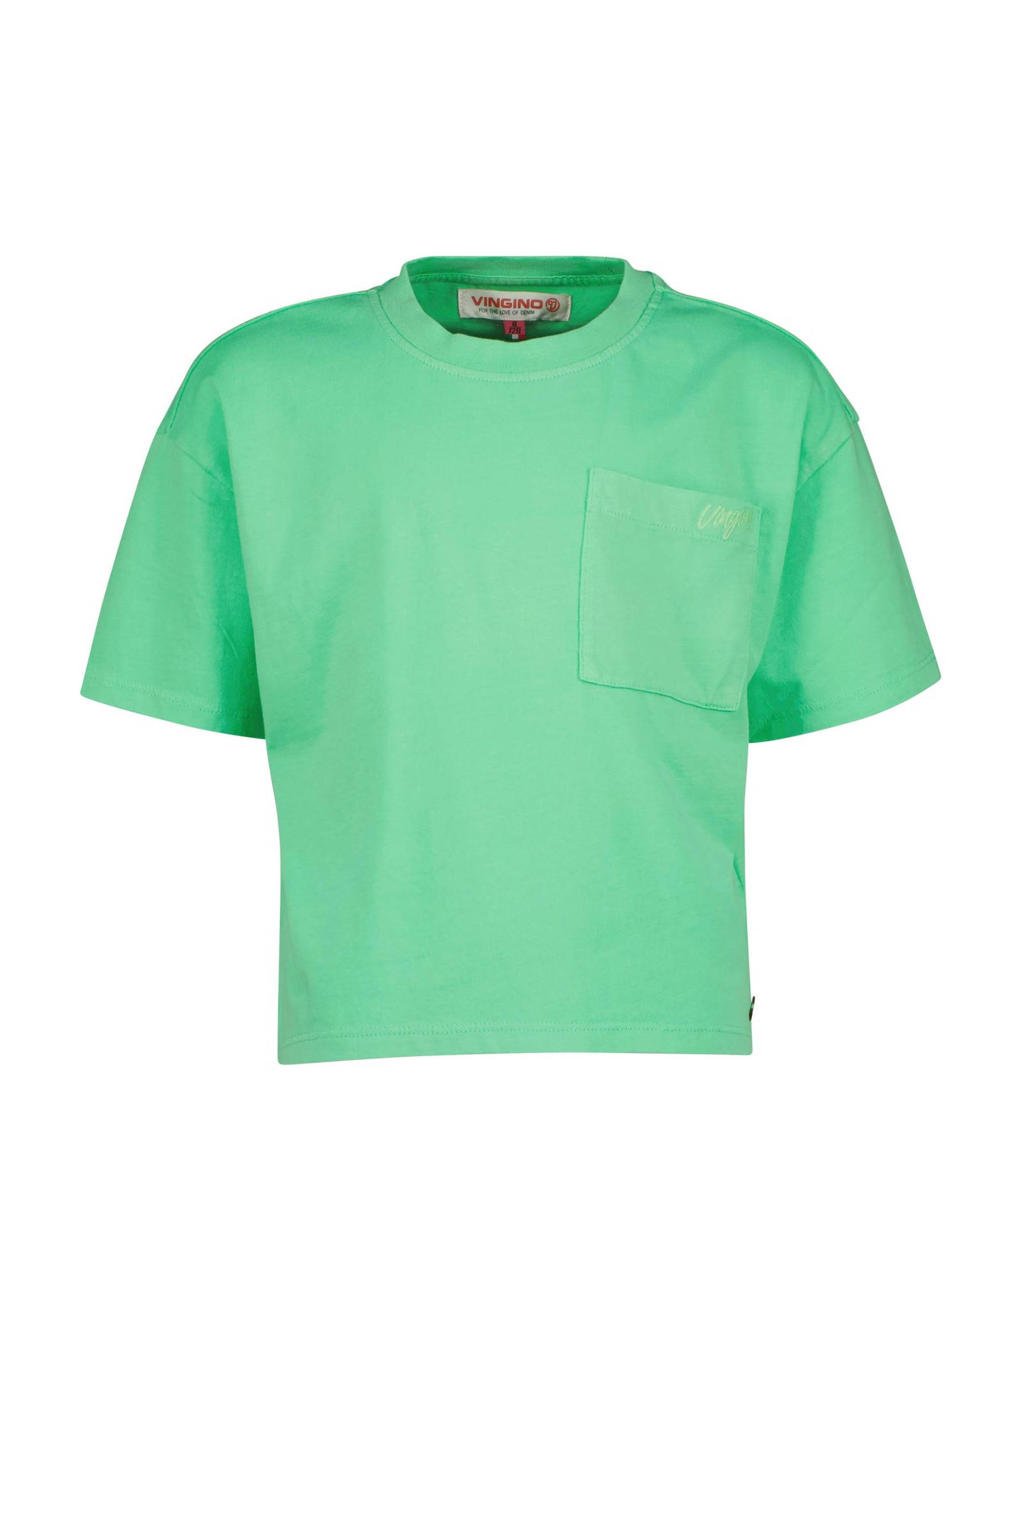 Groene meisjes Vingino T-shirt van katoen met korte mouwen en ronde hals